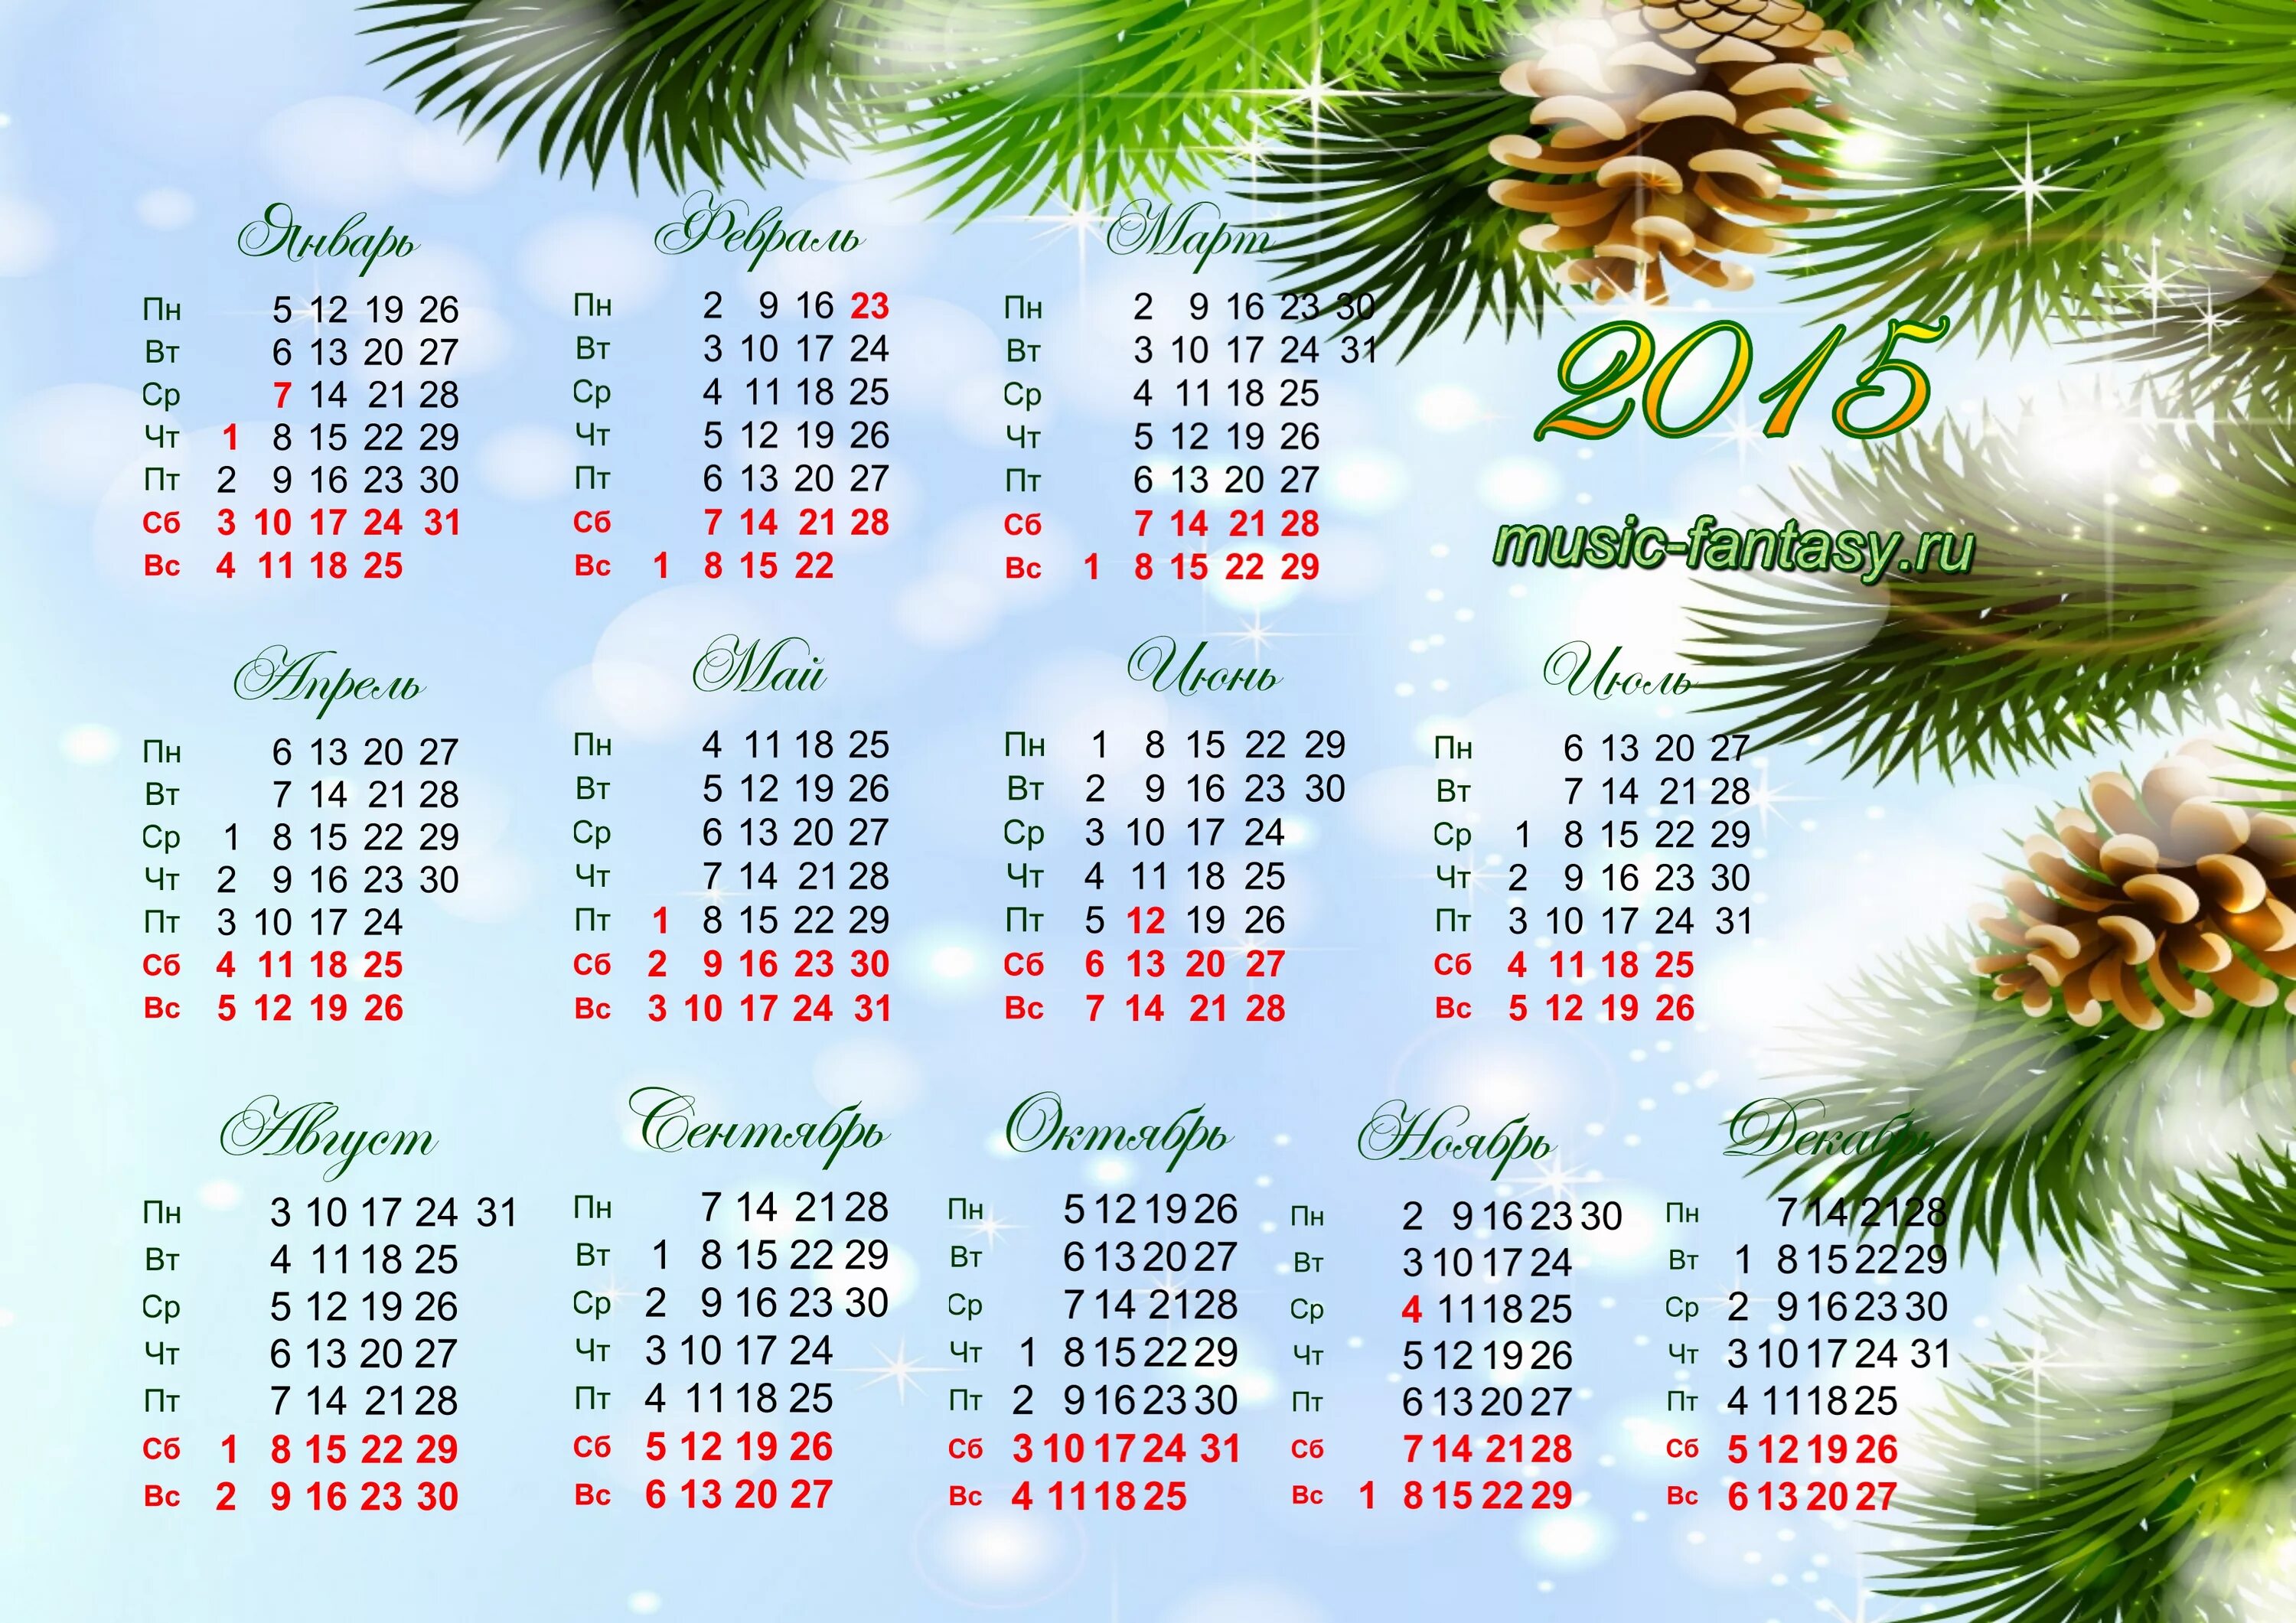 Календарь 2015. Календарь на 2015 год. Календарь 2015г. Календарь 2015 года по месяцам. 2014 год 2015 год тыс